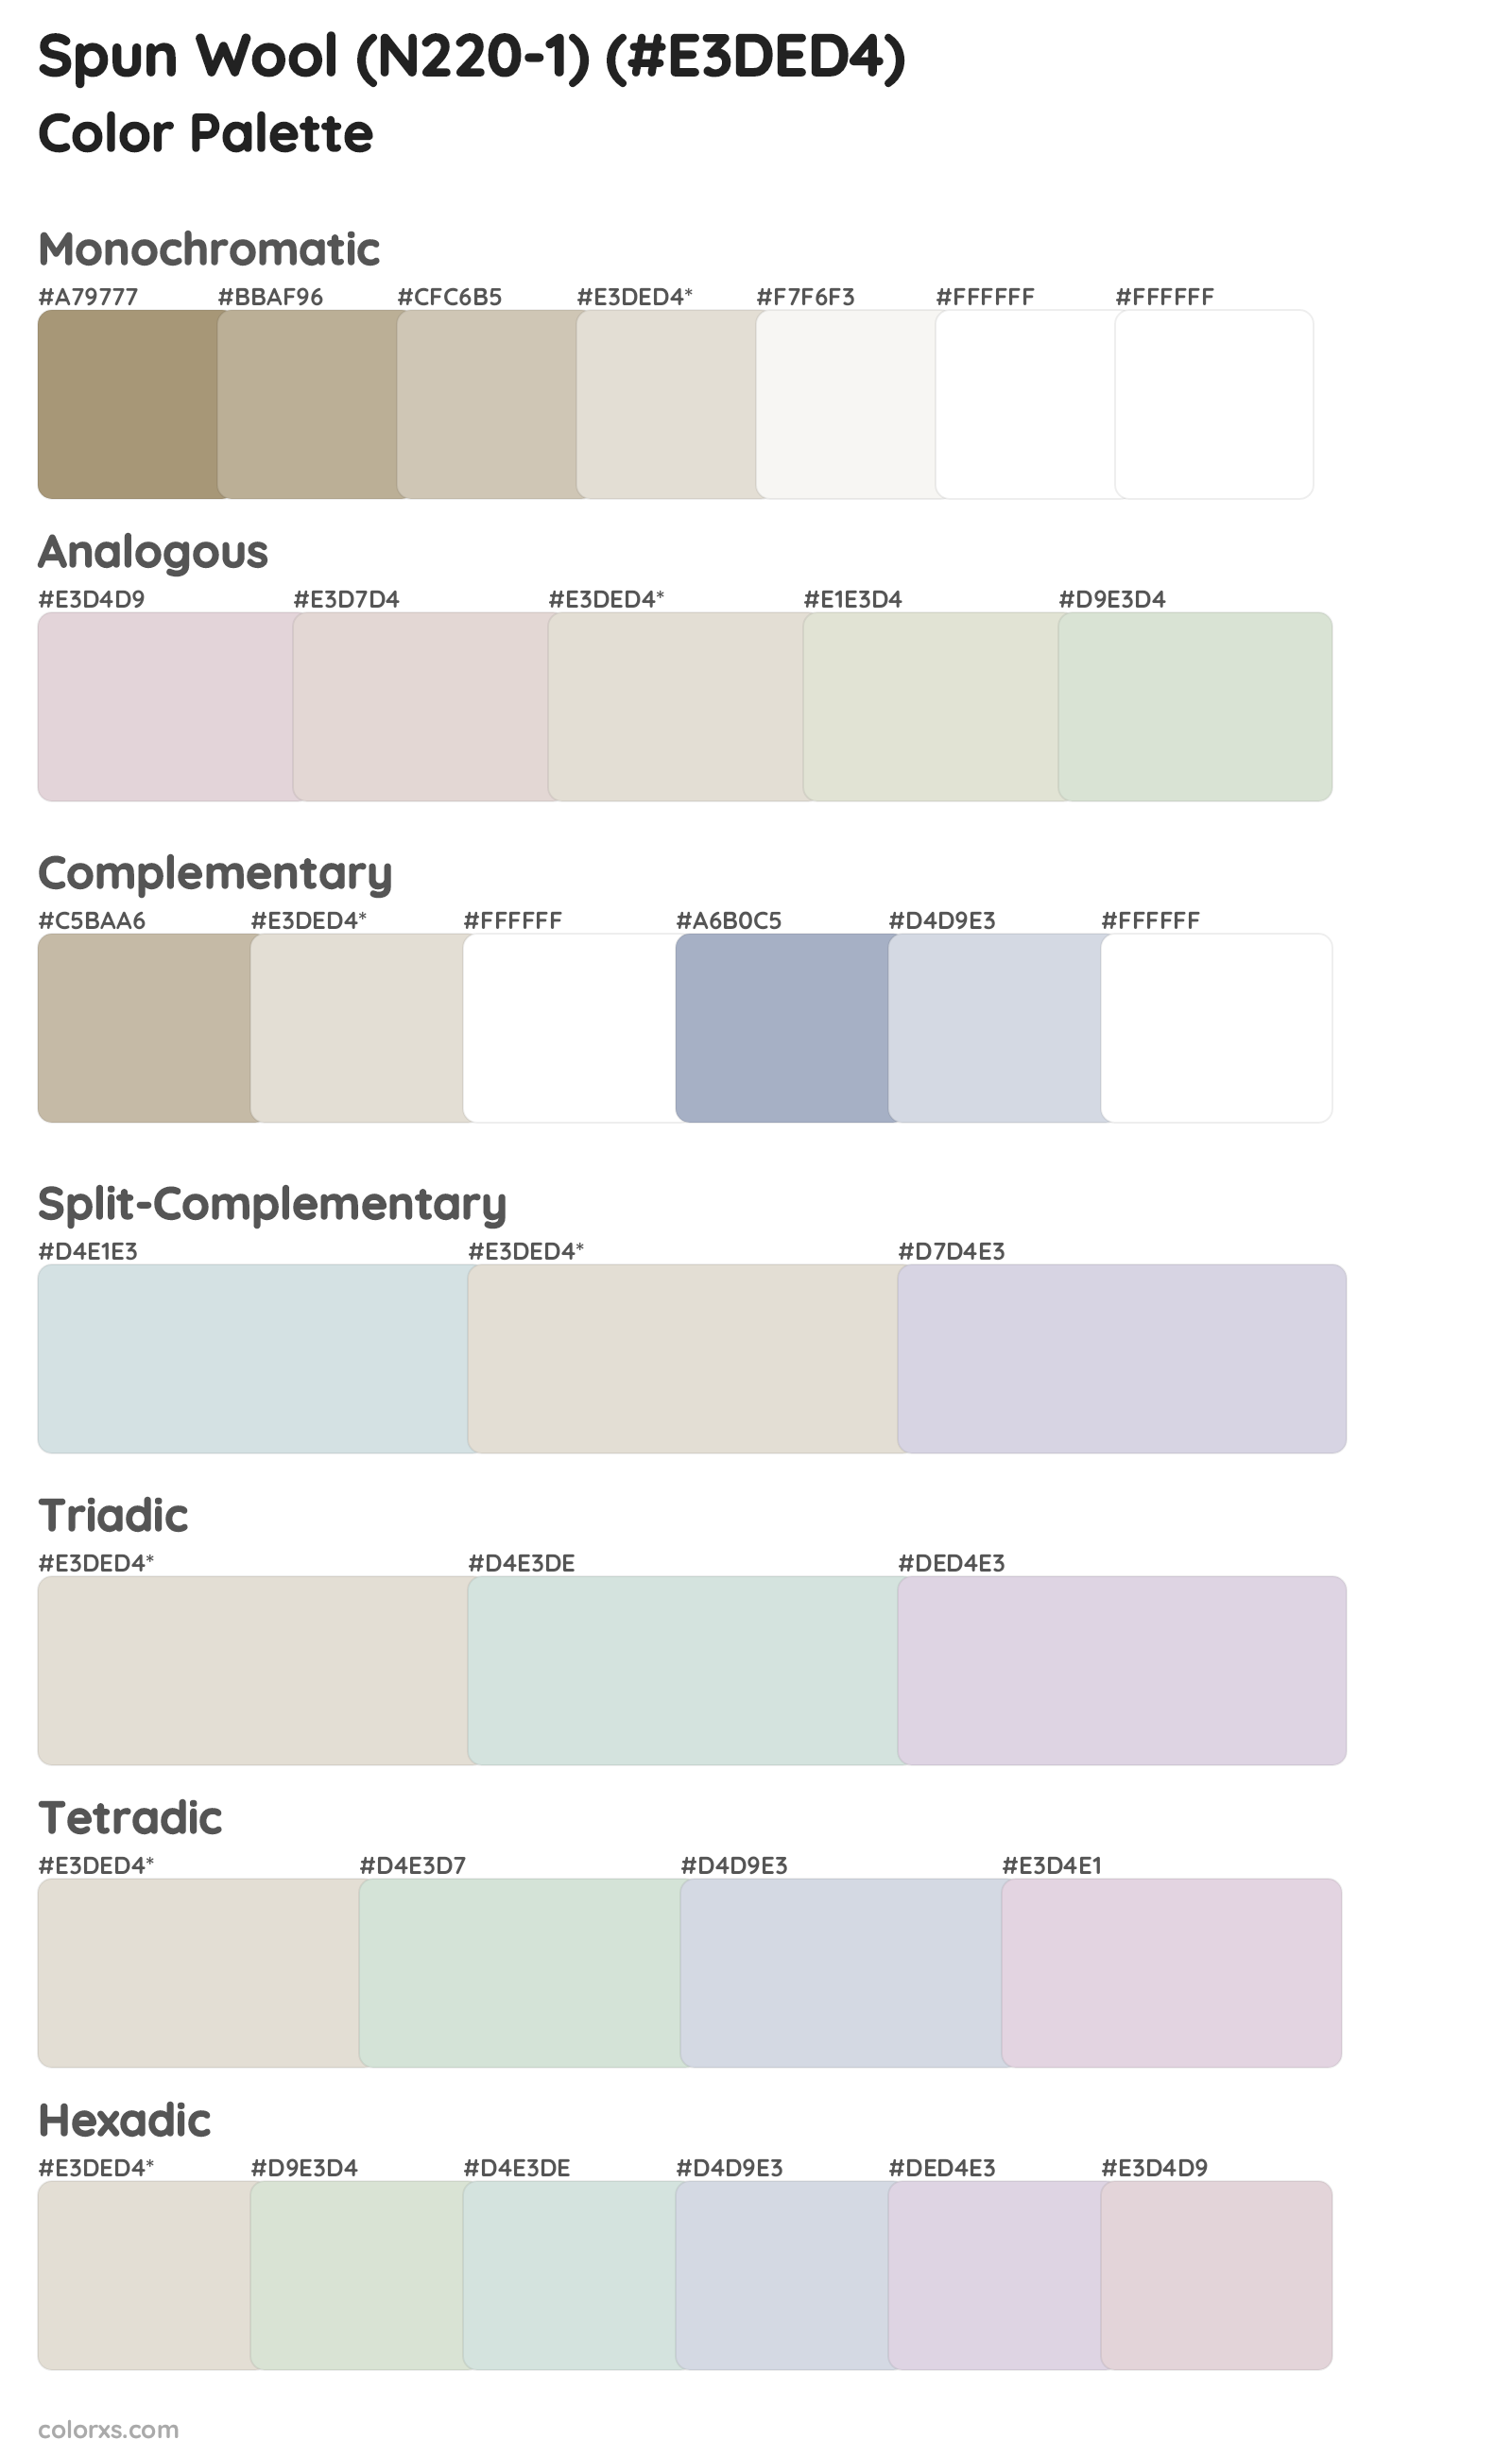 Spun Wool (N220-1) Color Scheme Palettes